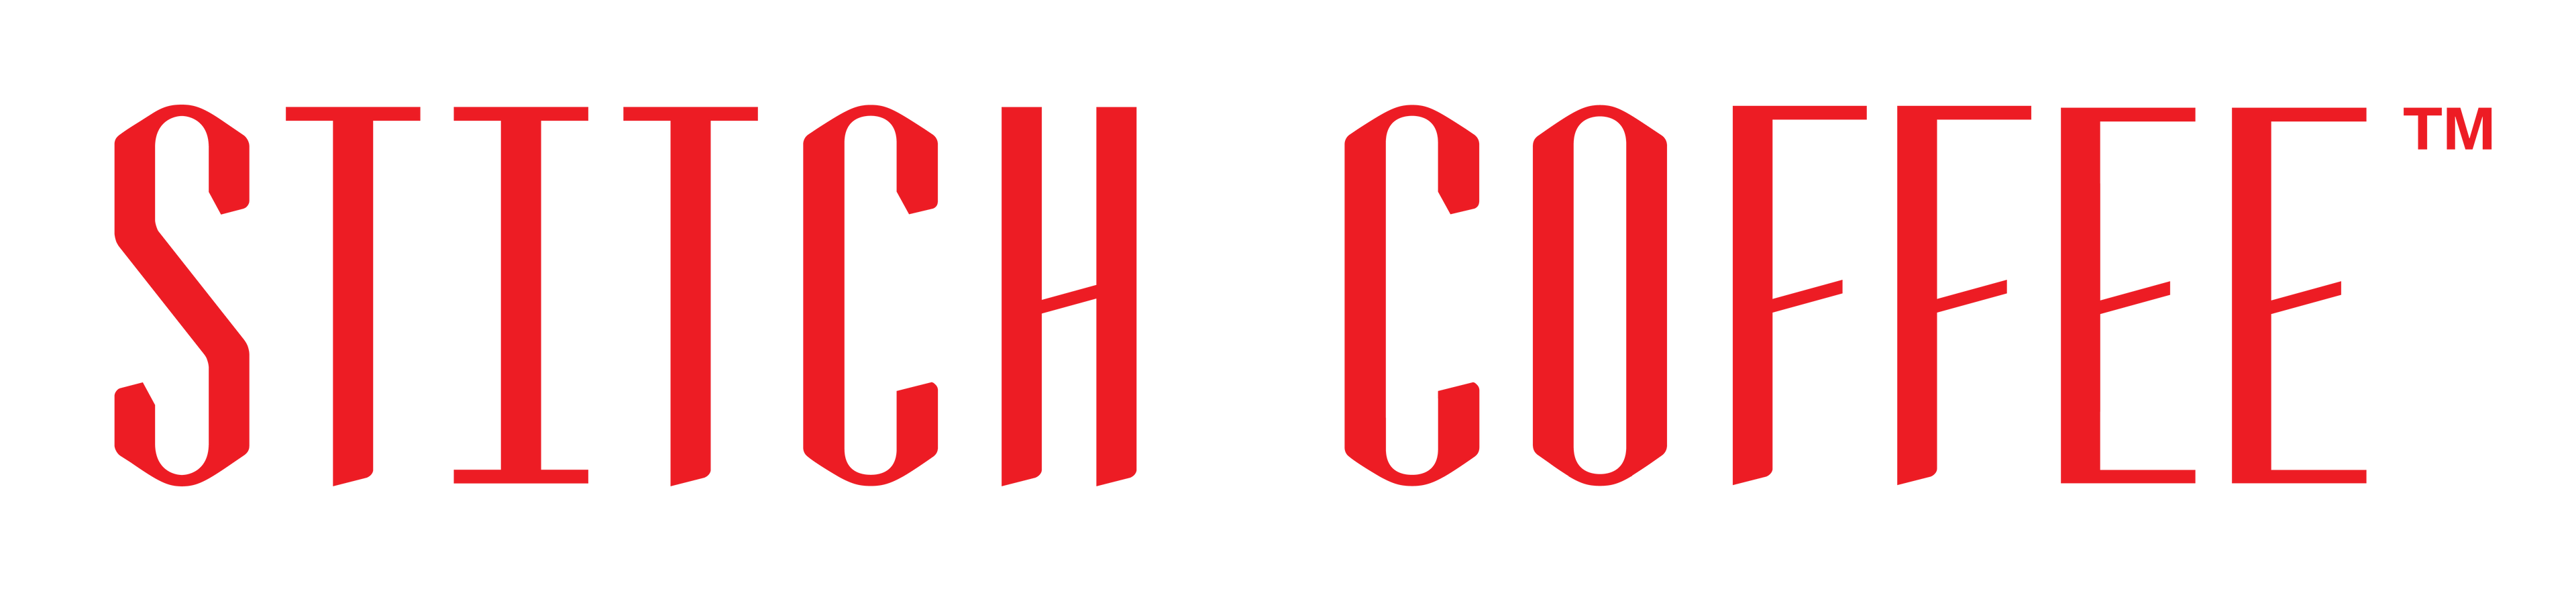 Stitch Coffee Logo